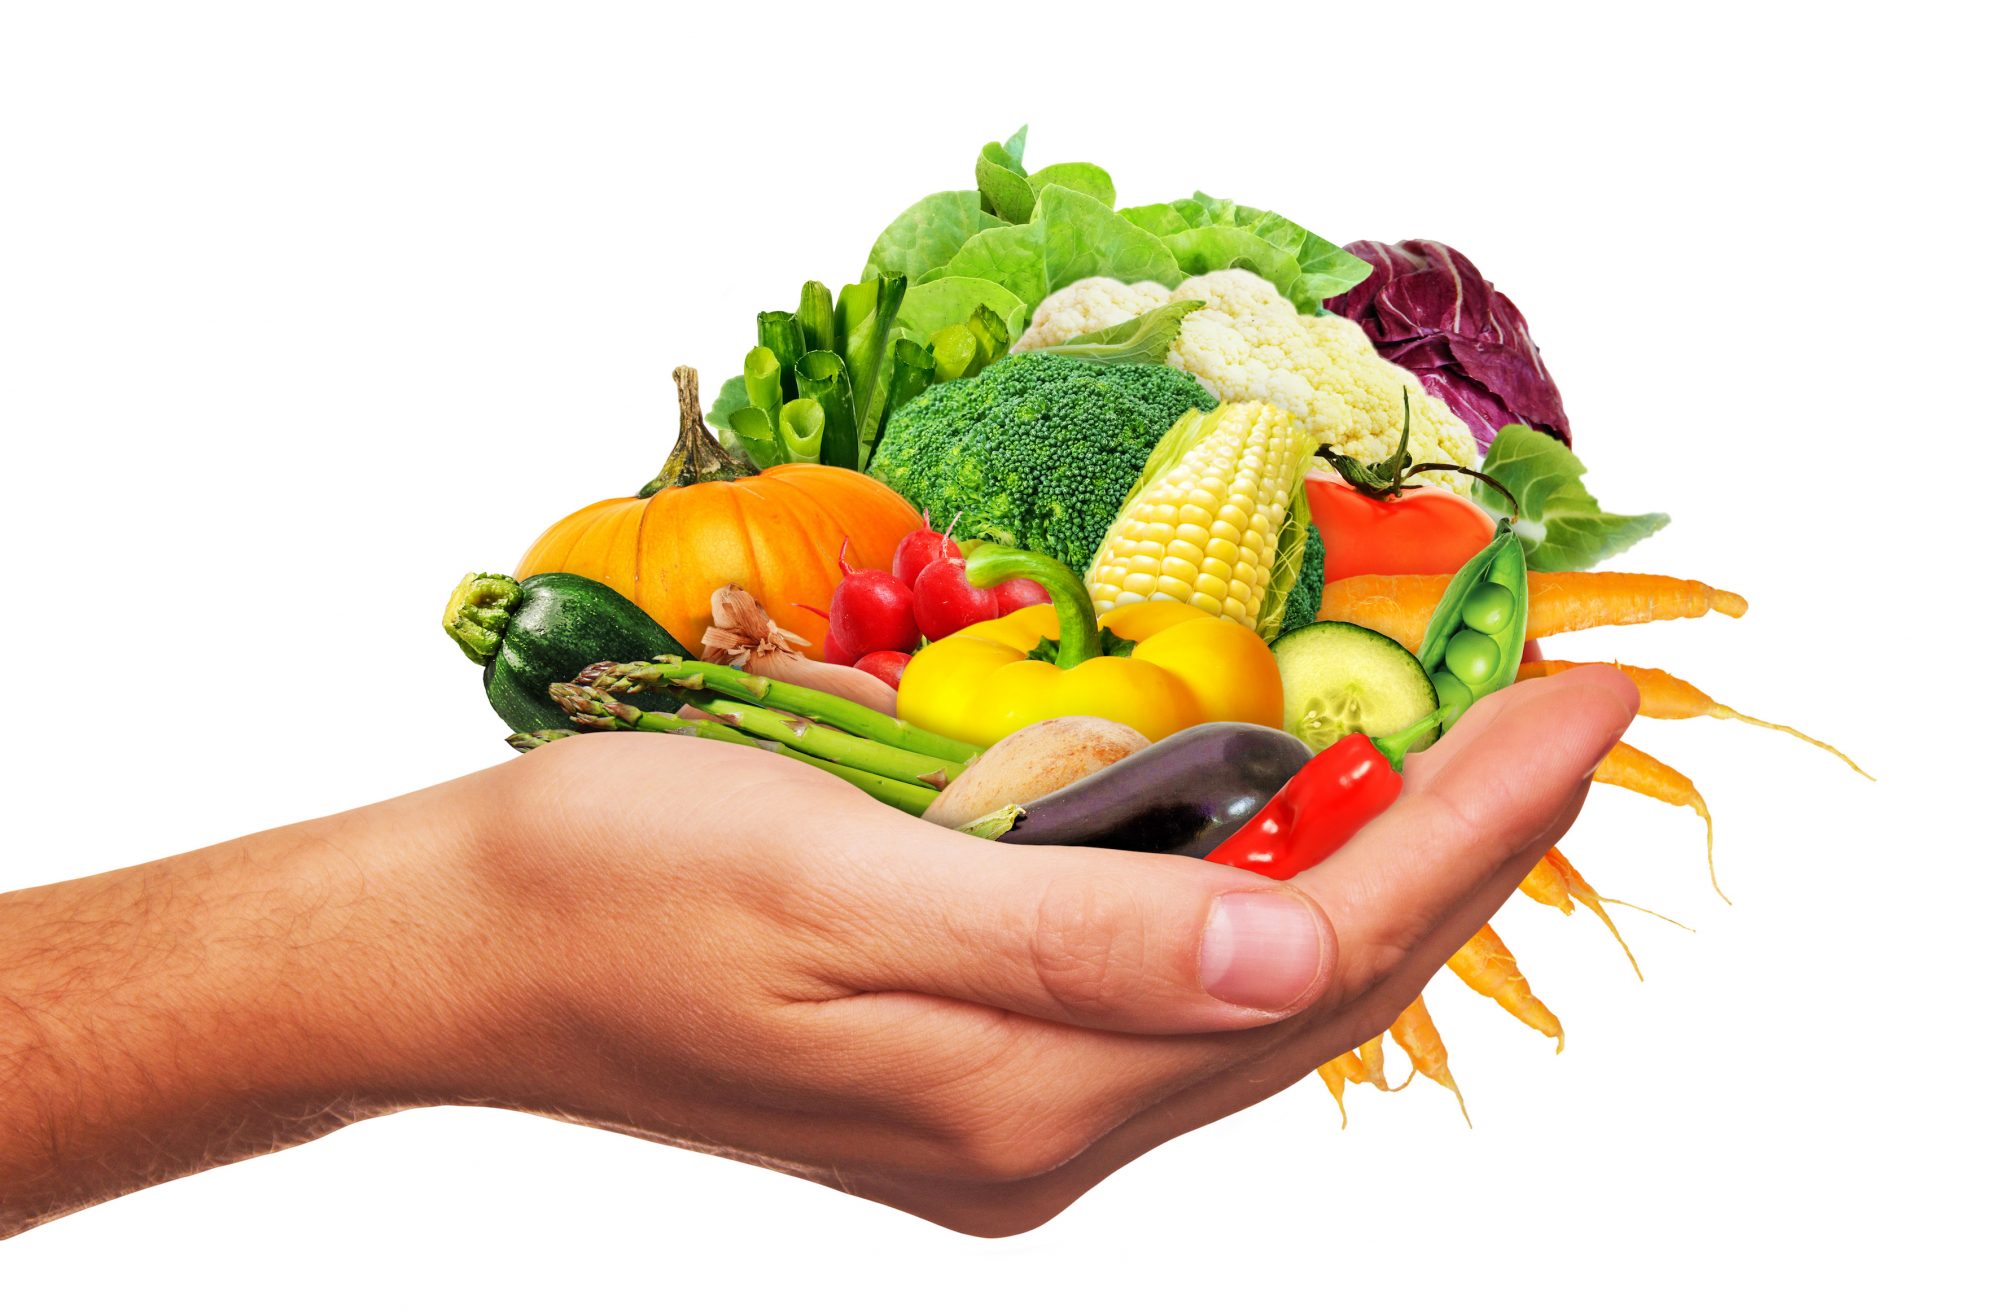 Frisches Gemse in der Hand – Fresh vegetables in the hand